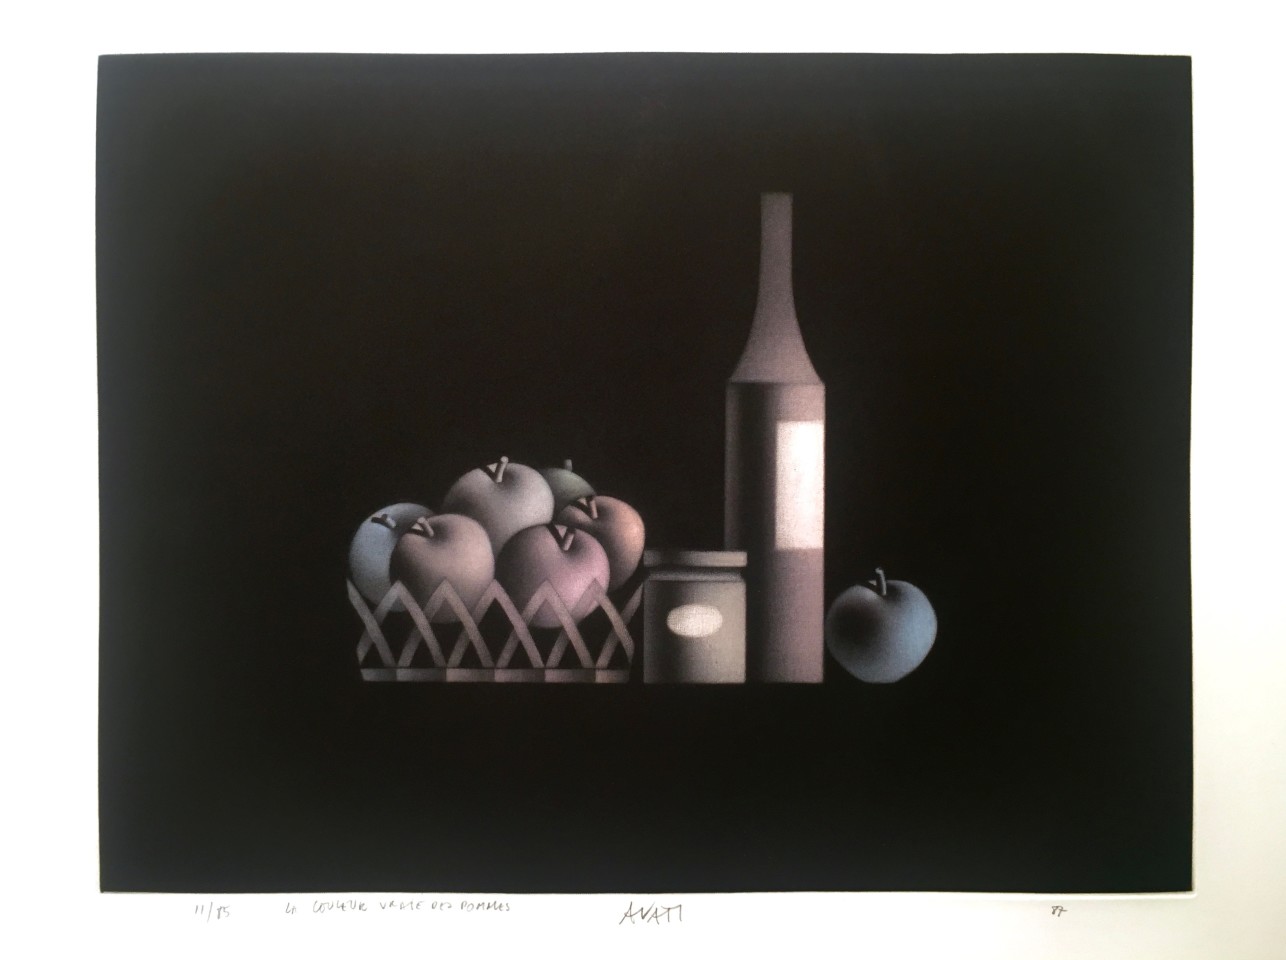 Mario Avati, La Couleur vraie des pommes, 1987